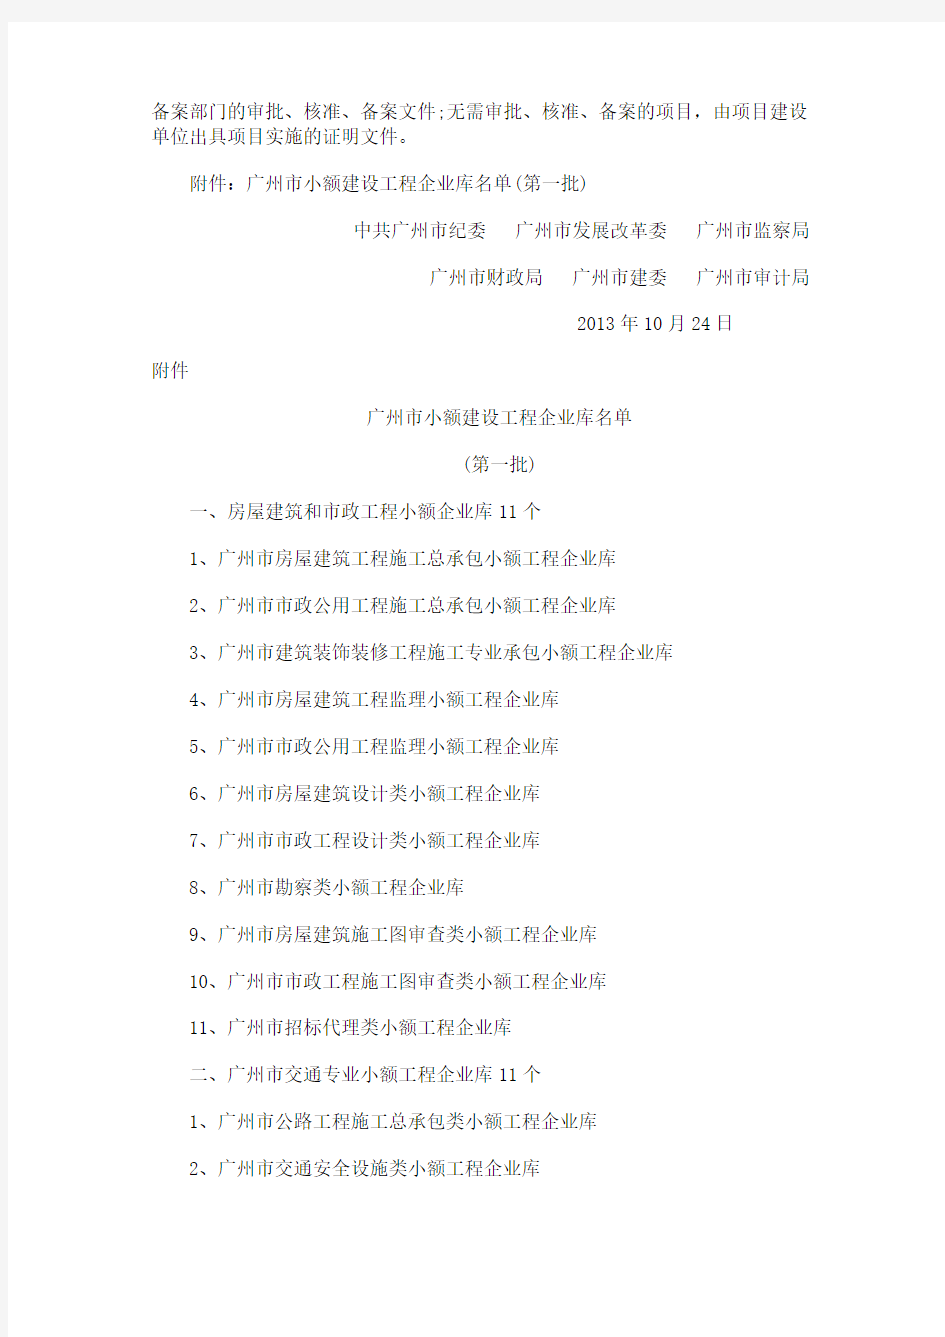 中共广州市纪委等六部门关于执行广州市小额建设工程交易管理办法的补充通知